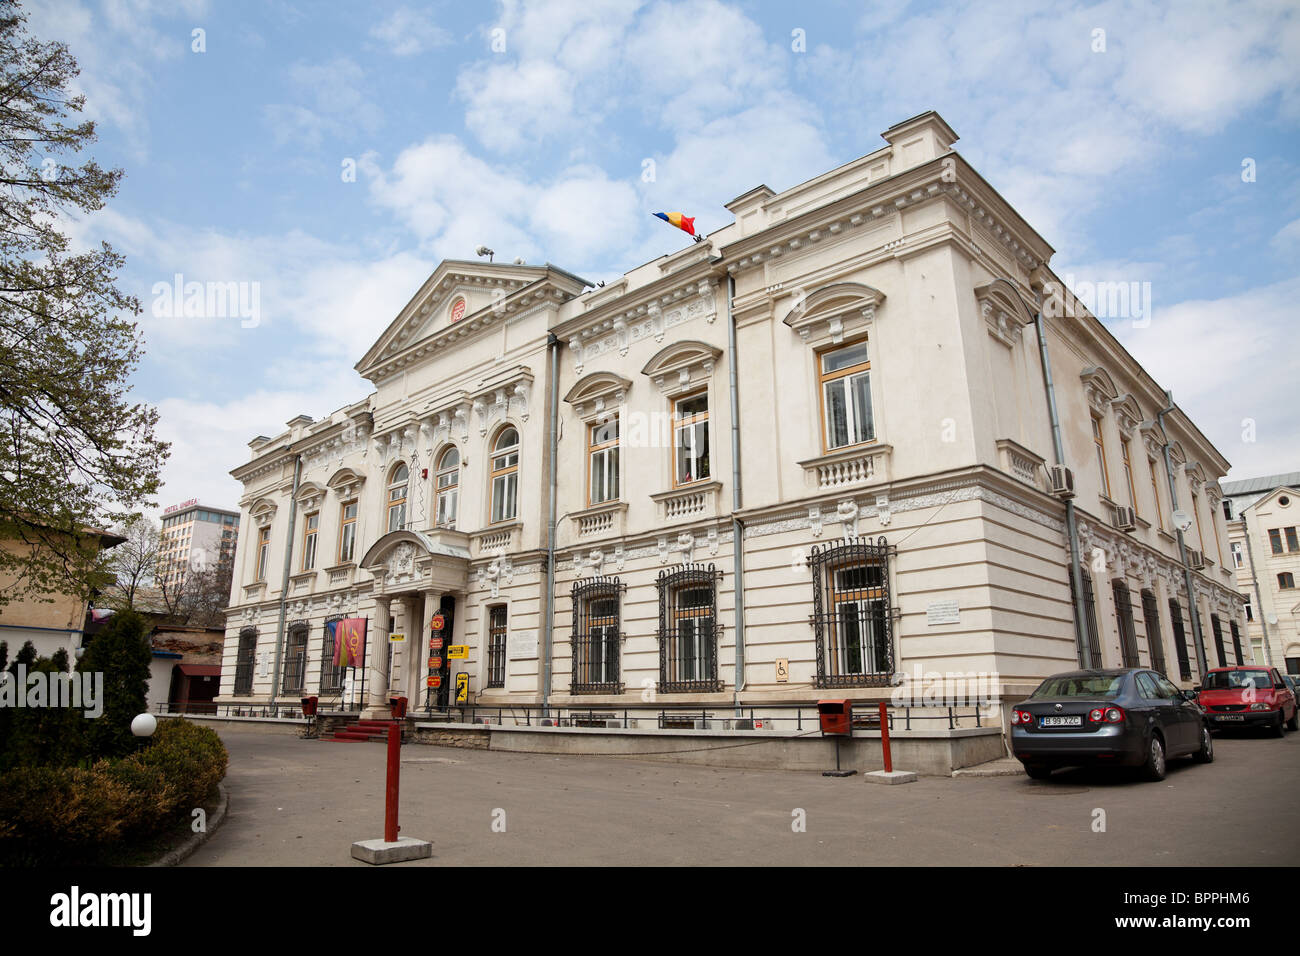 Le bâtiment principal de la Poste Roumaine de Iasi, Roumanie. Banque D'Images